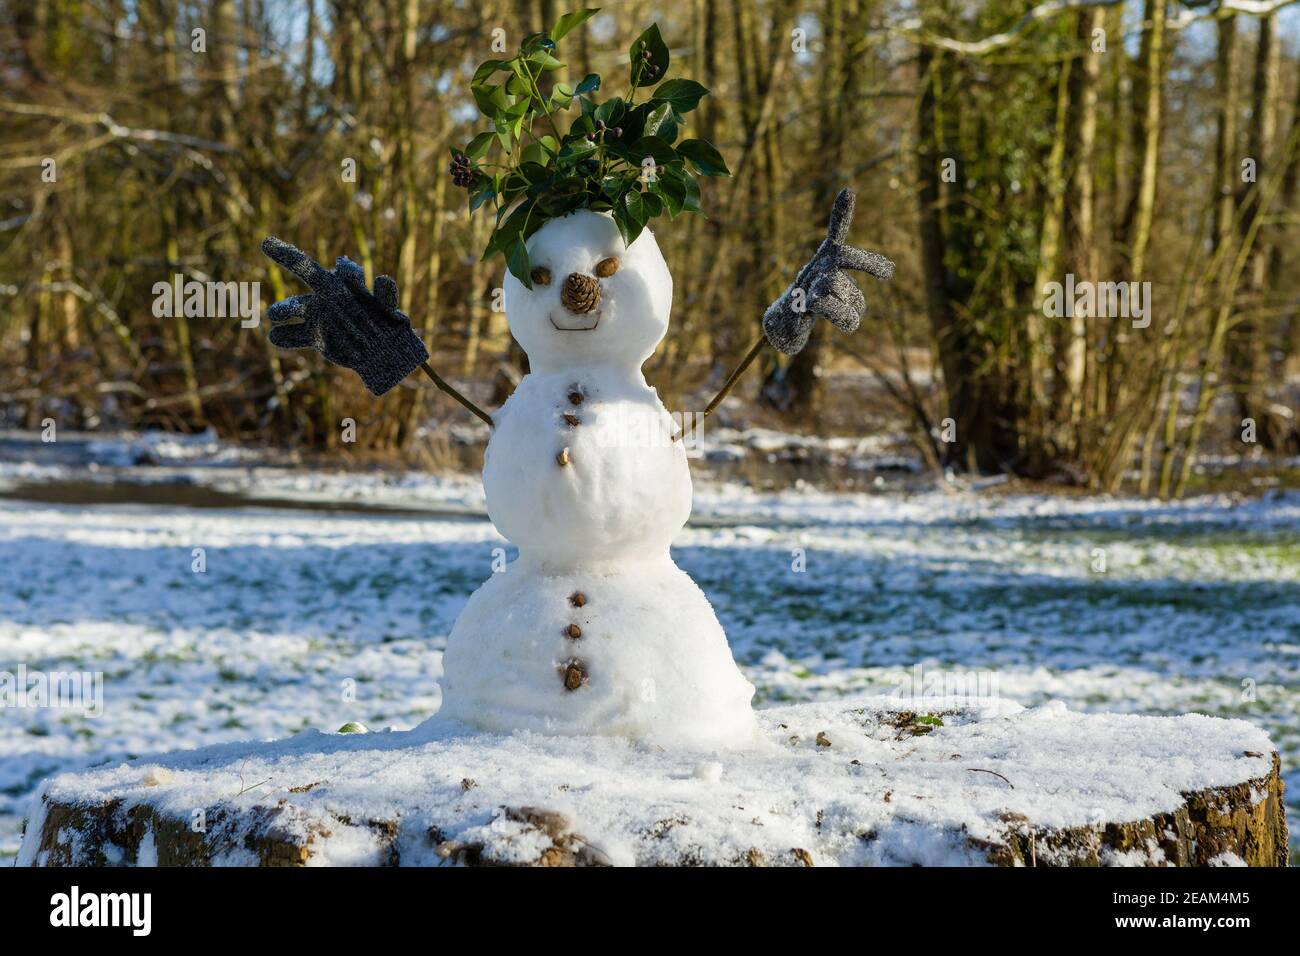 Simpatico pupazzo di neve composto da tre palle di neve con foglie per capelli, rametti per braccia con guanti per bambini, cono di abete per naso e pietre per bottoni. Foto Stock